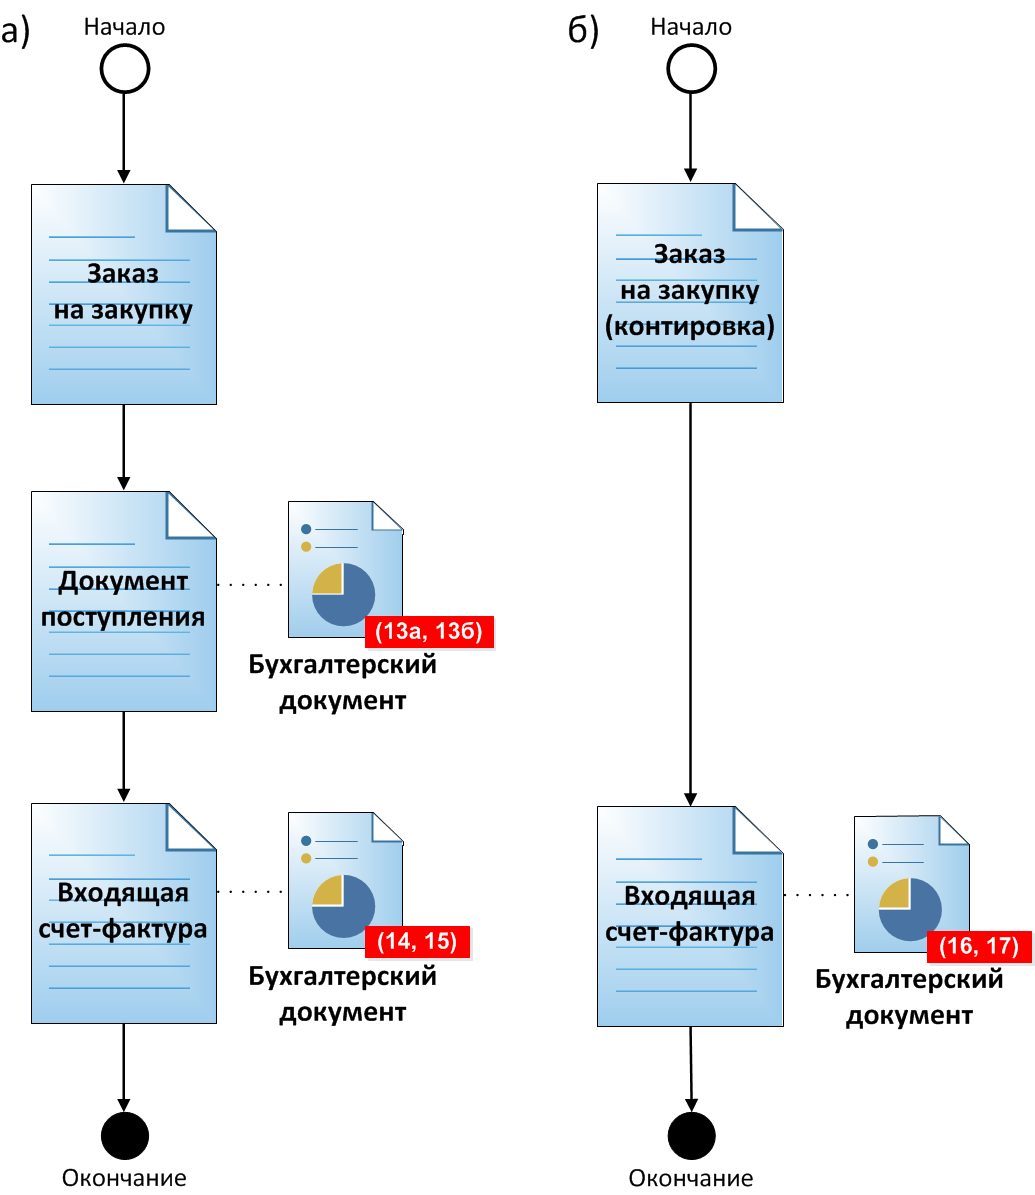 Использование бизнес-объектов SAP при описании процесса агентской схемы закупки: товаров, работ и услуг